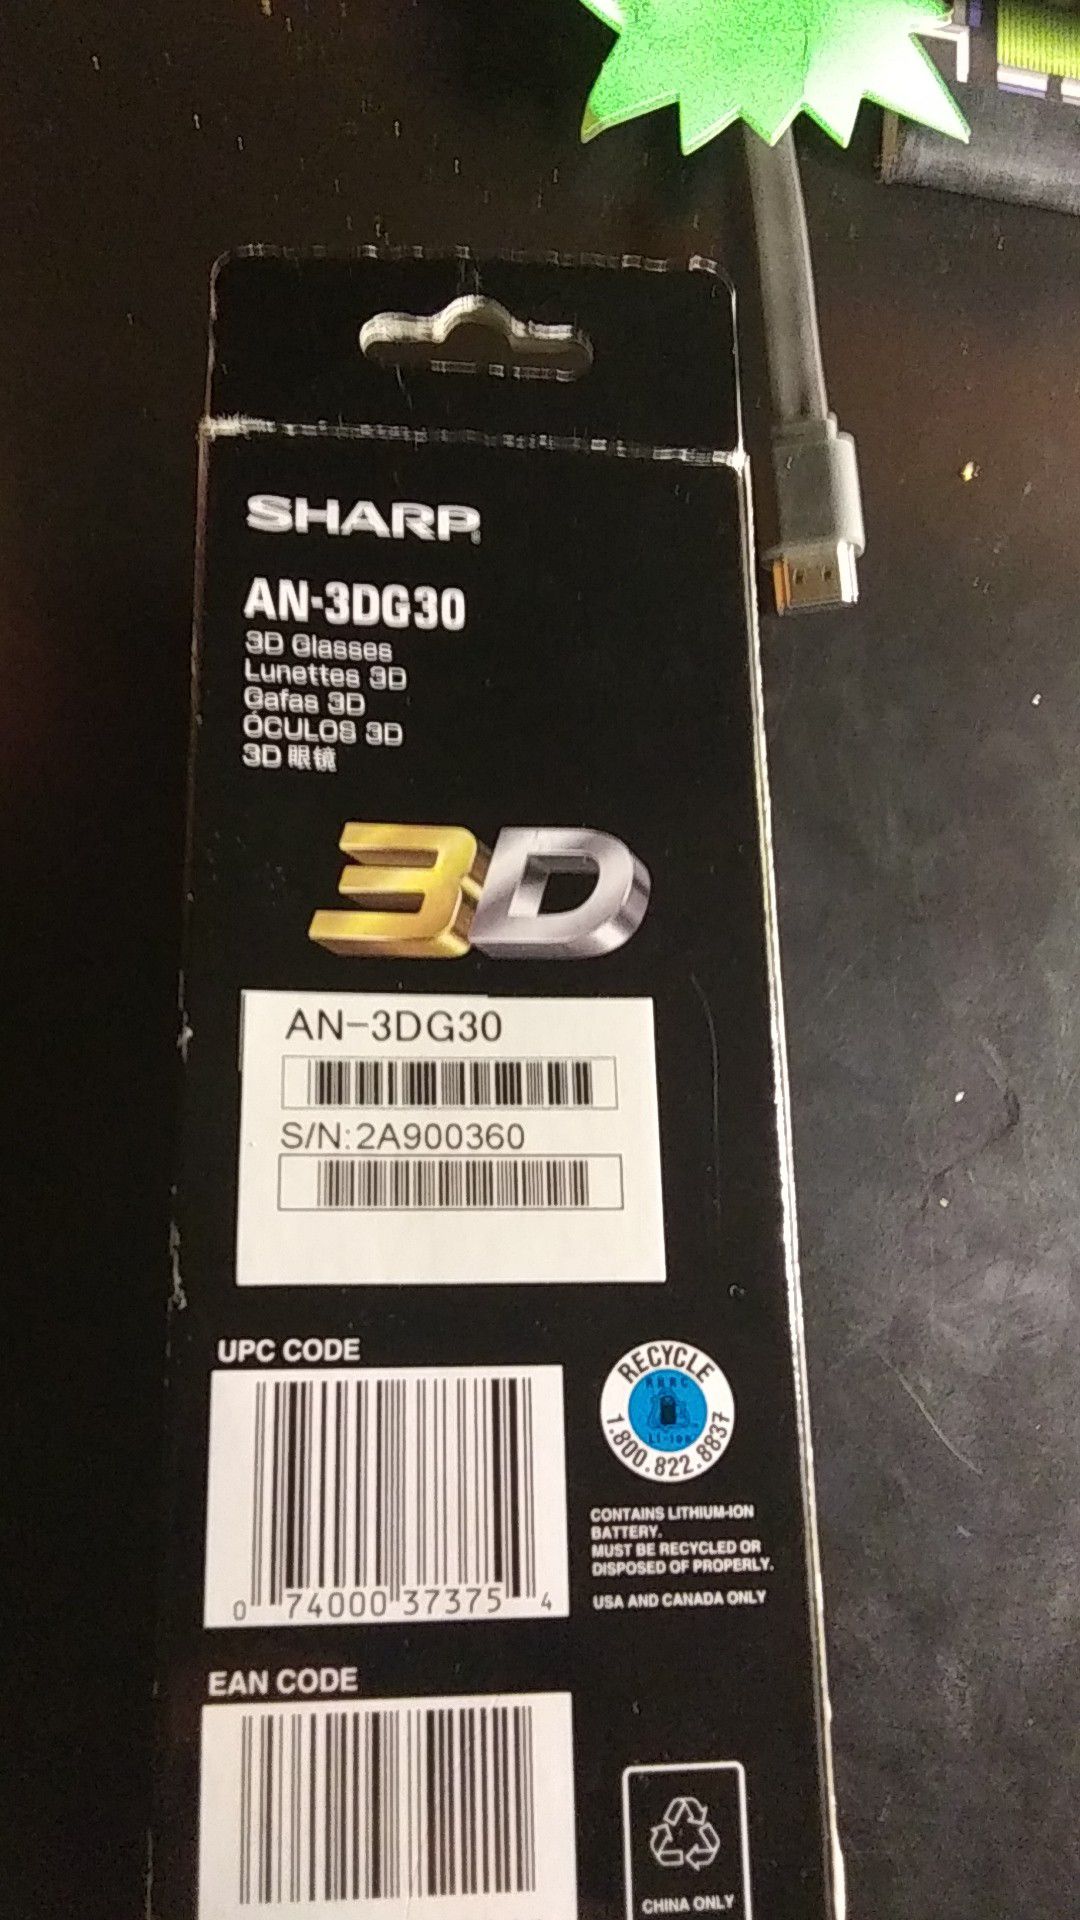 SHARP 3D SUNGLASSES MODEL AN-3DG30! BRAND NEW IN BOX!